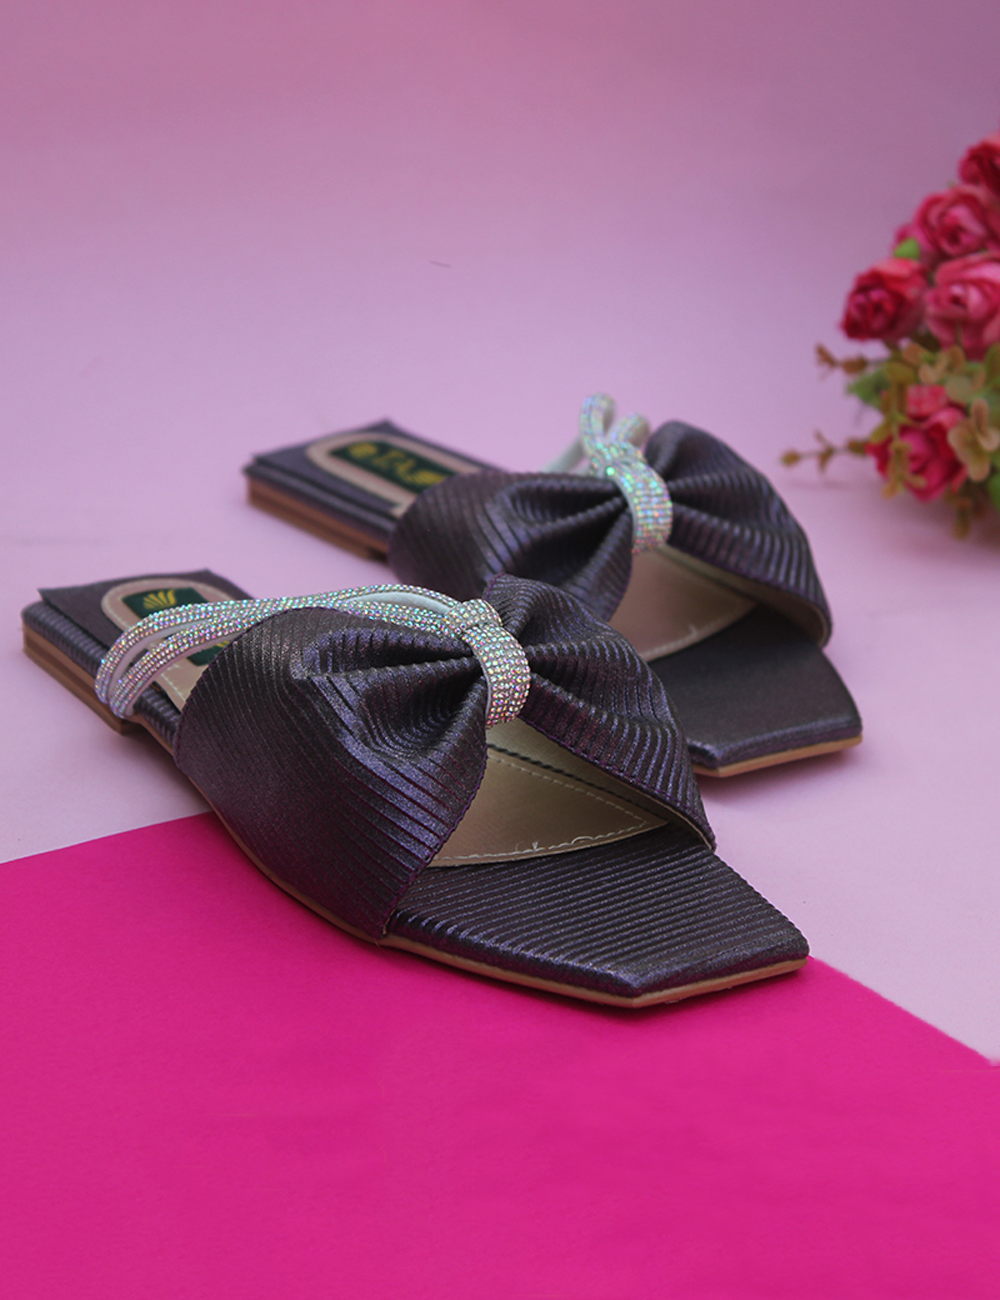 Stylish Fancy Purple Slippers